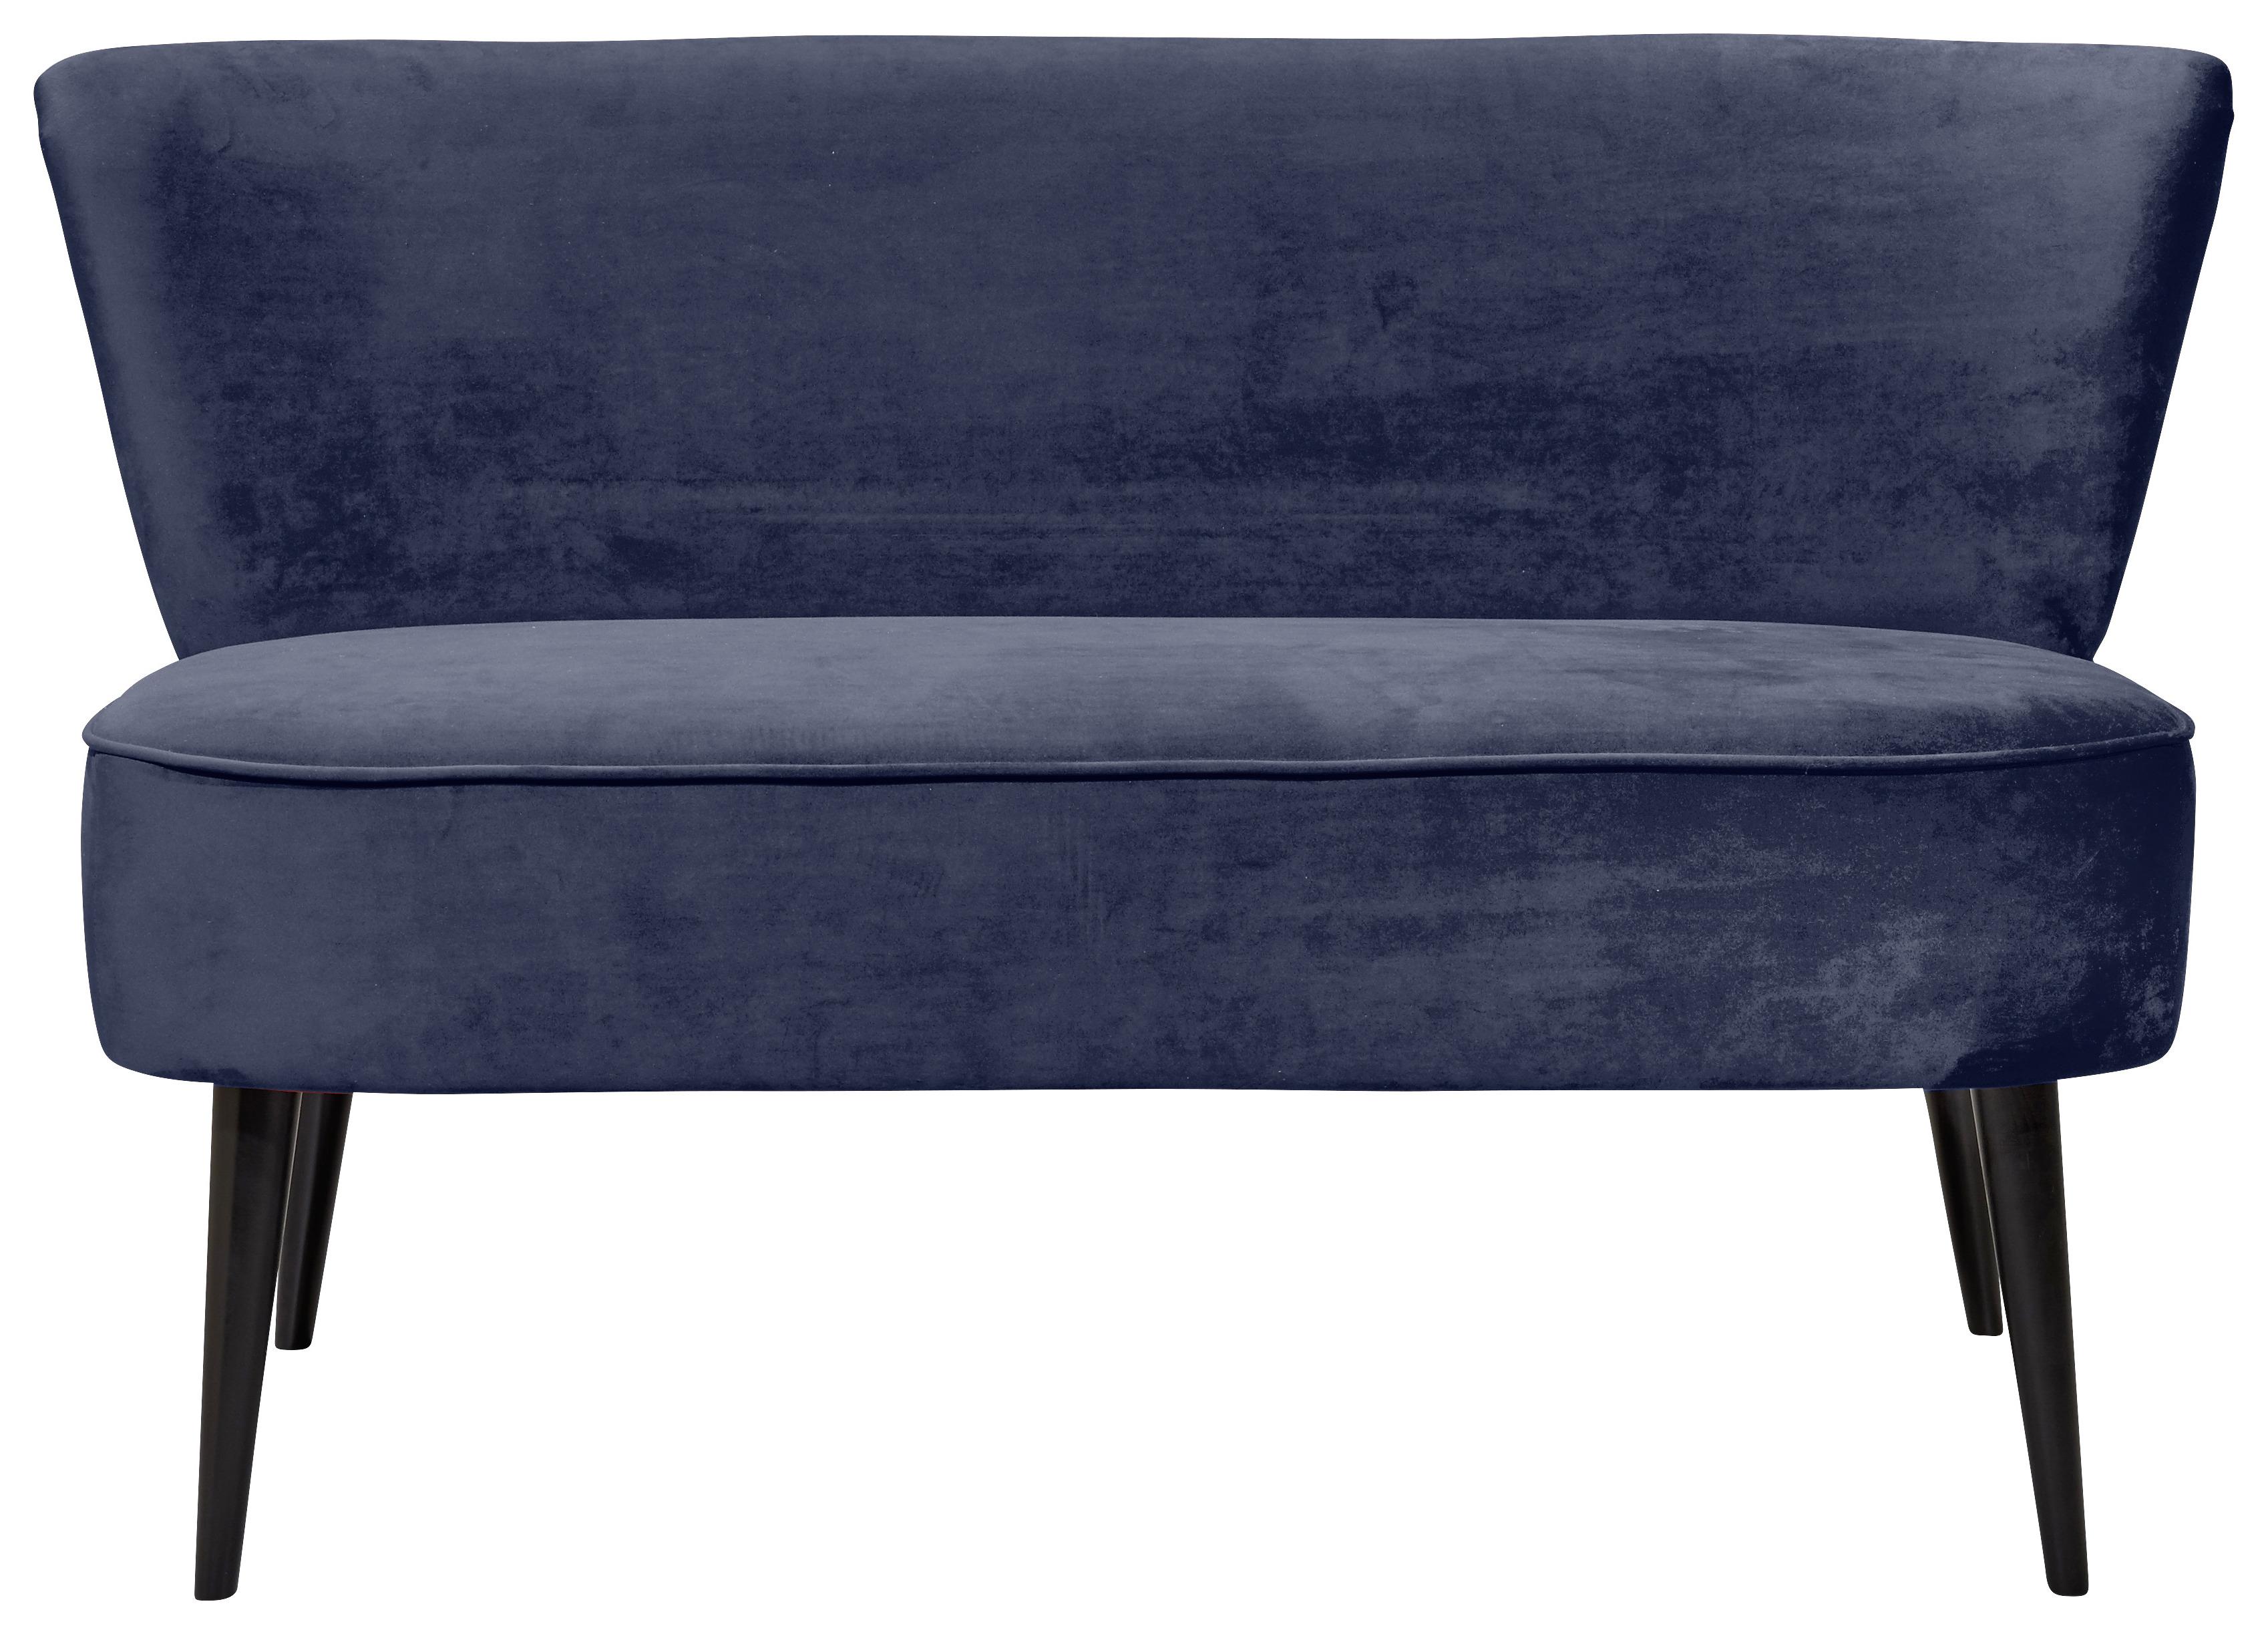 Sitzbank mit Lehne Gepolstert Samt Blau Lord B: 179 cm - Blau/Schwarz, Trend, Holzwerkstoff/Textil (179/83/75cm) - MID.YOU